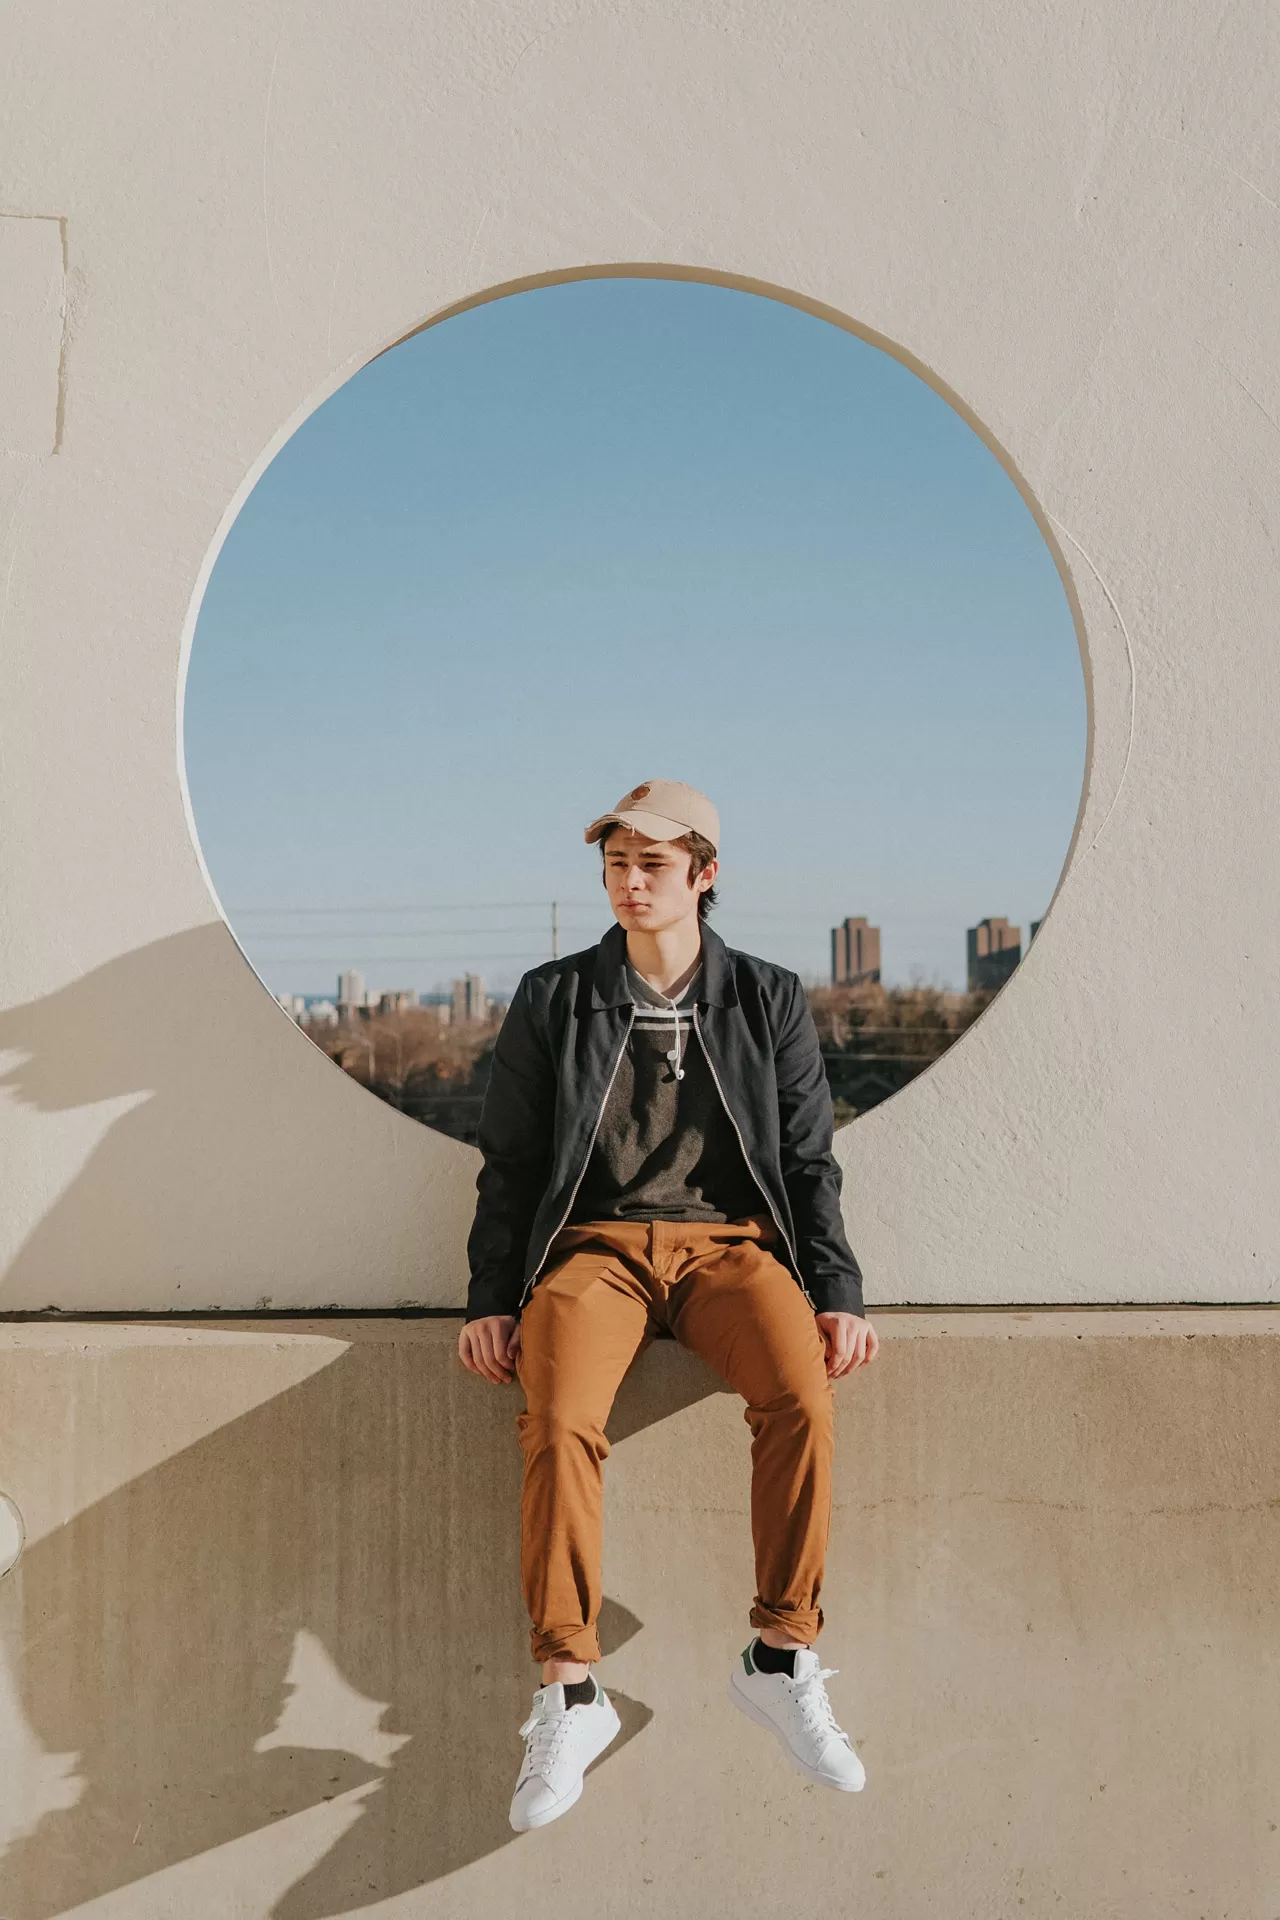 Nachdenklicher Teenager sitzt auf Betonmauer, hinter ihm ein kreisrundes Fensterloch mit Blick auf eine Stadt.